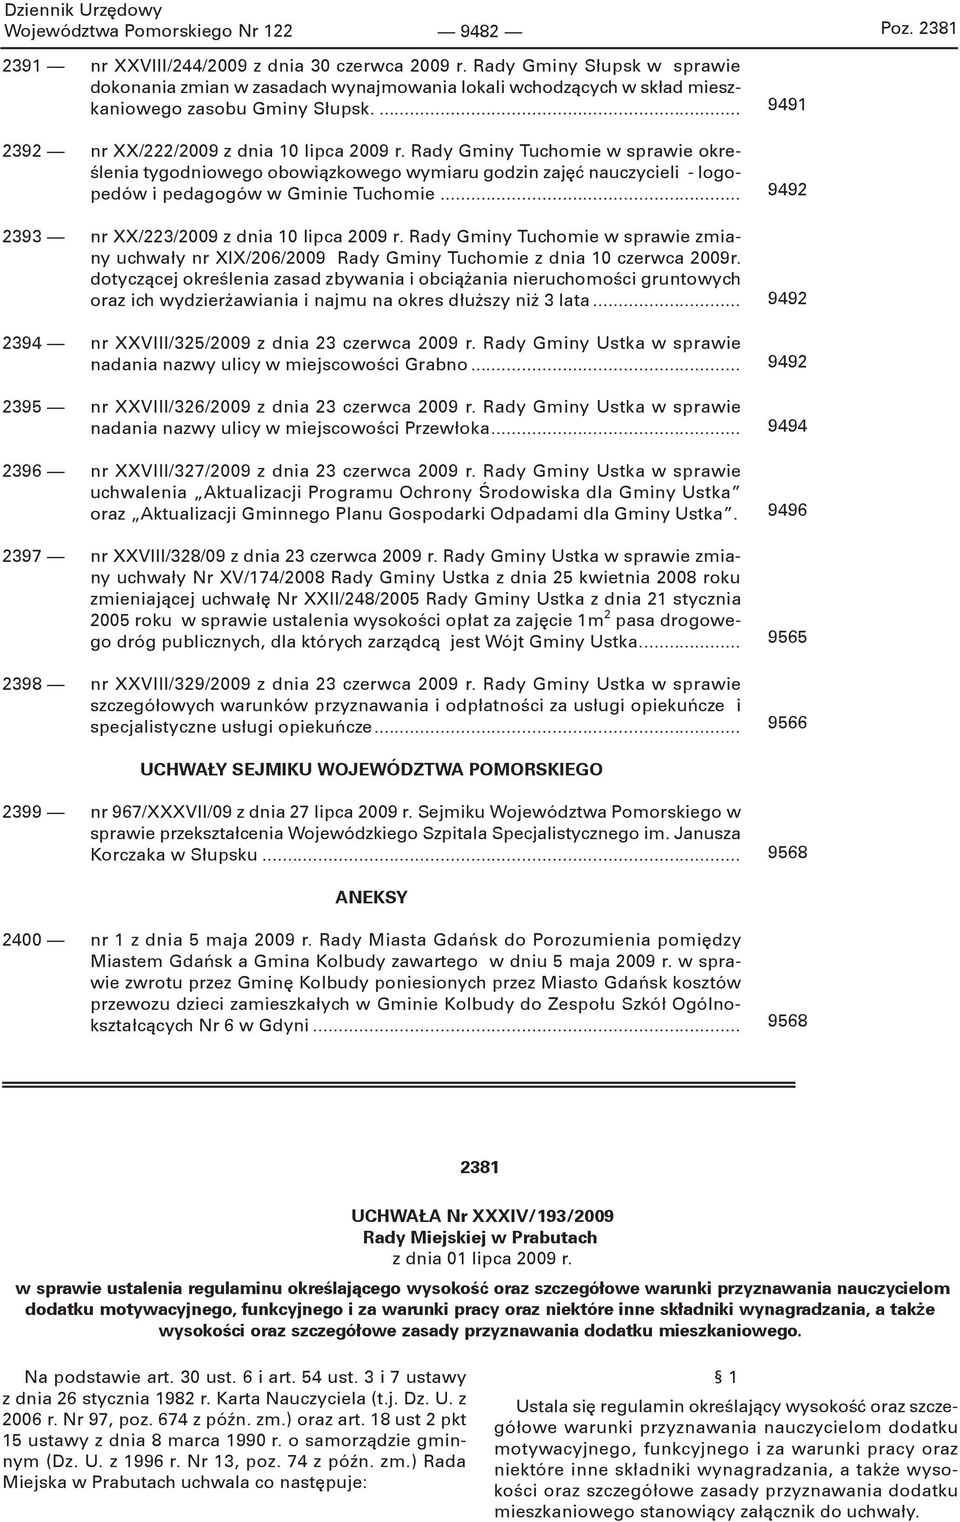 Rady Gminy Tuchomie w sprawie określenia tygodniowego obowiązkowego wymiaru godzin zajęć nauczycieli - logopedów i pedagogów w Gminie Tuchomie... 2393 nr XX/223/2009 z dnia 10 lipca 2009 r.